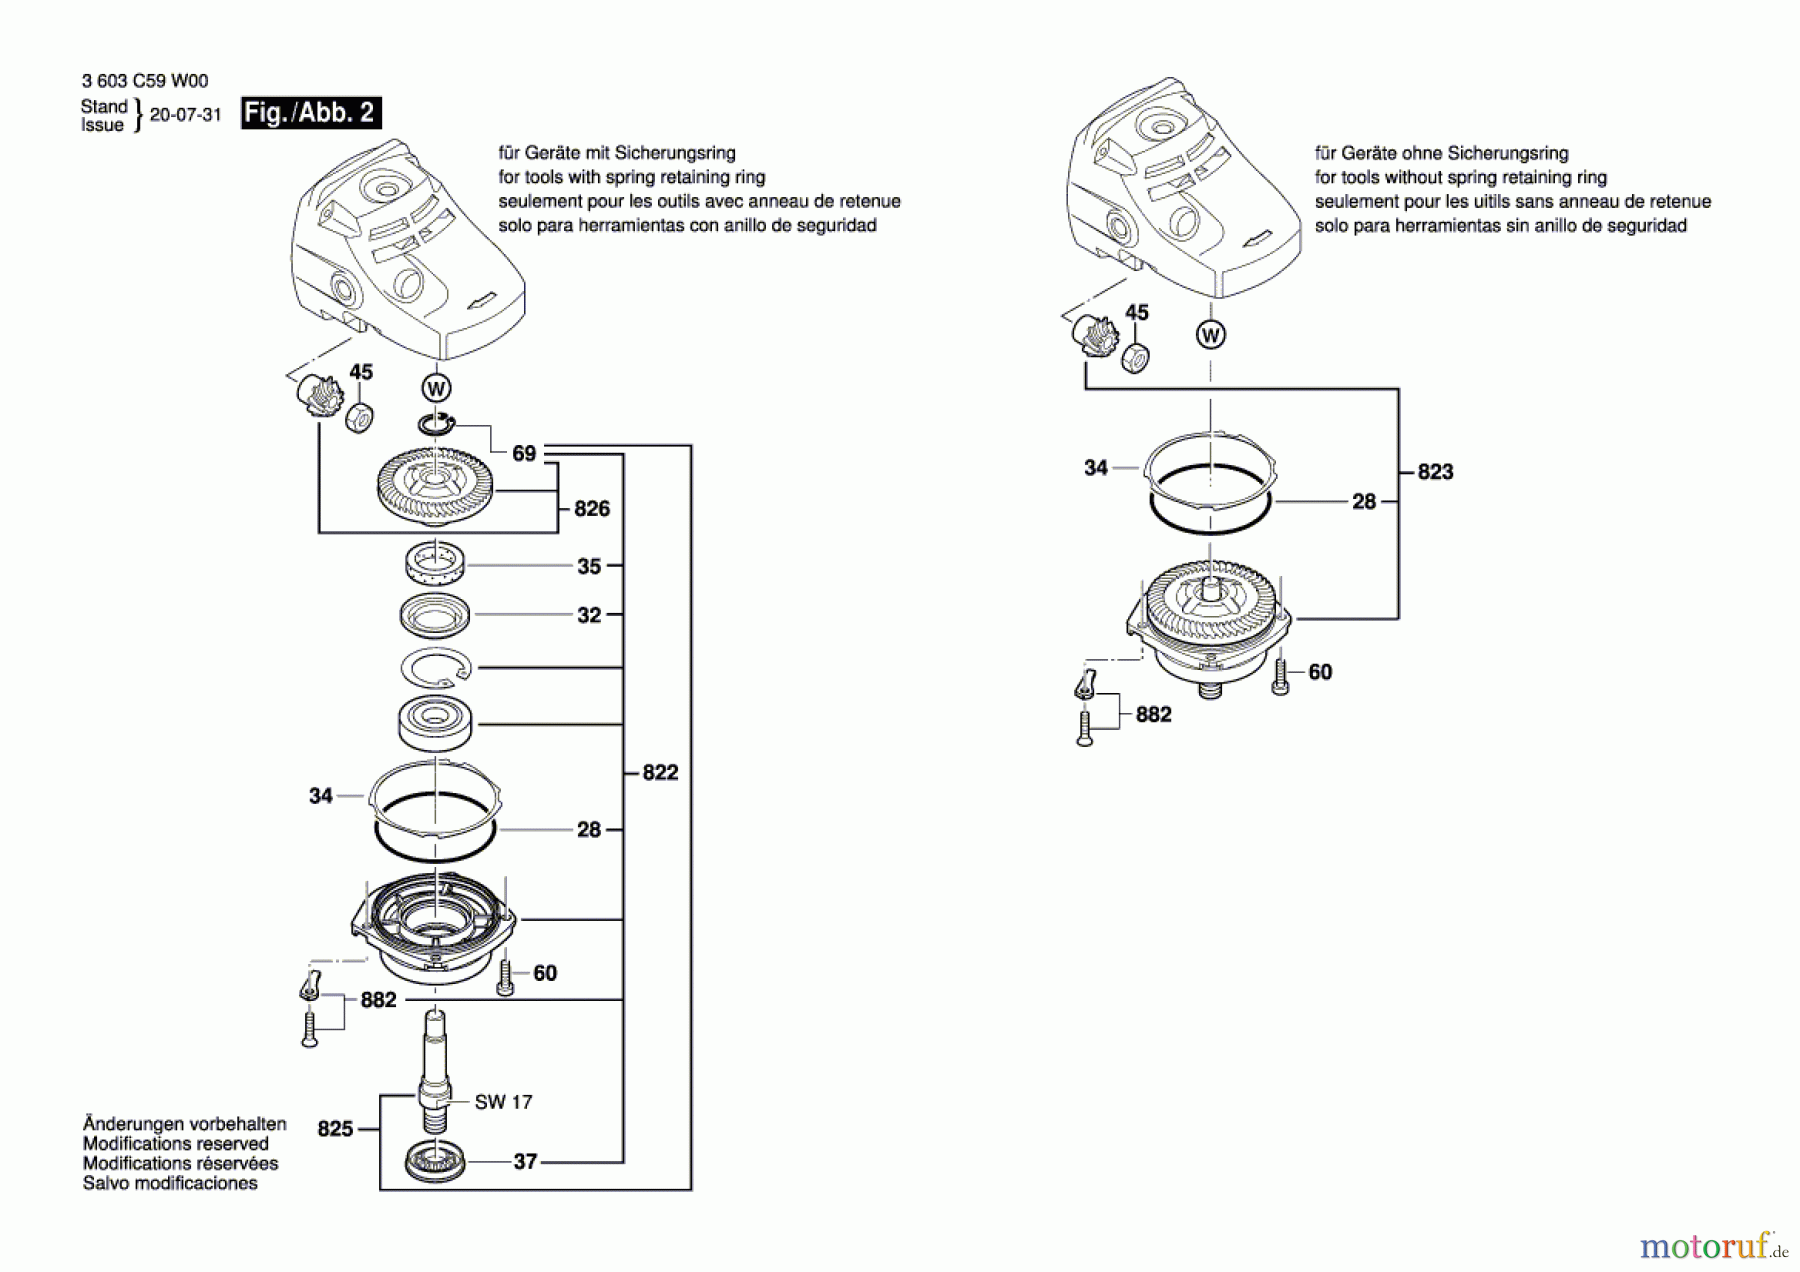  Bosch Werkzeug Winkelschleifer PWS 1900 Seite 2